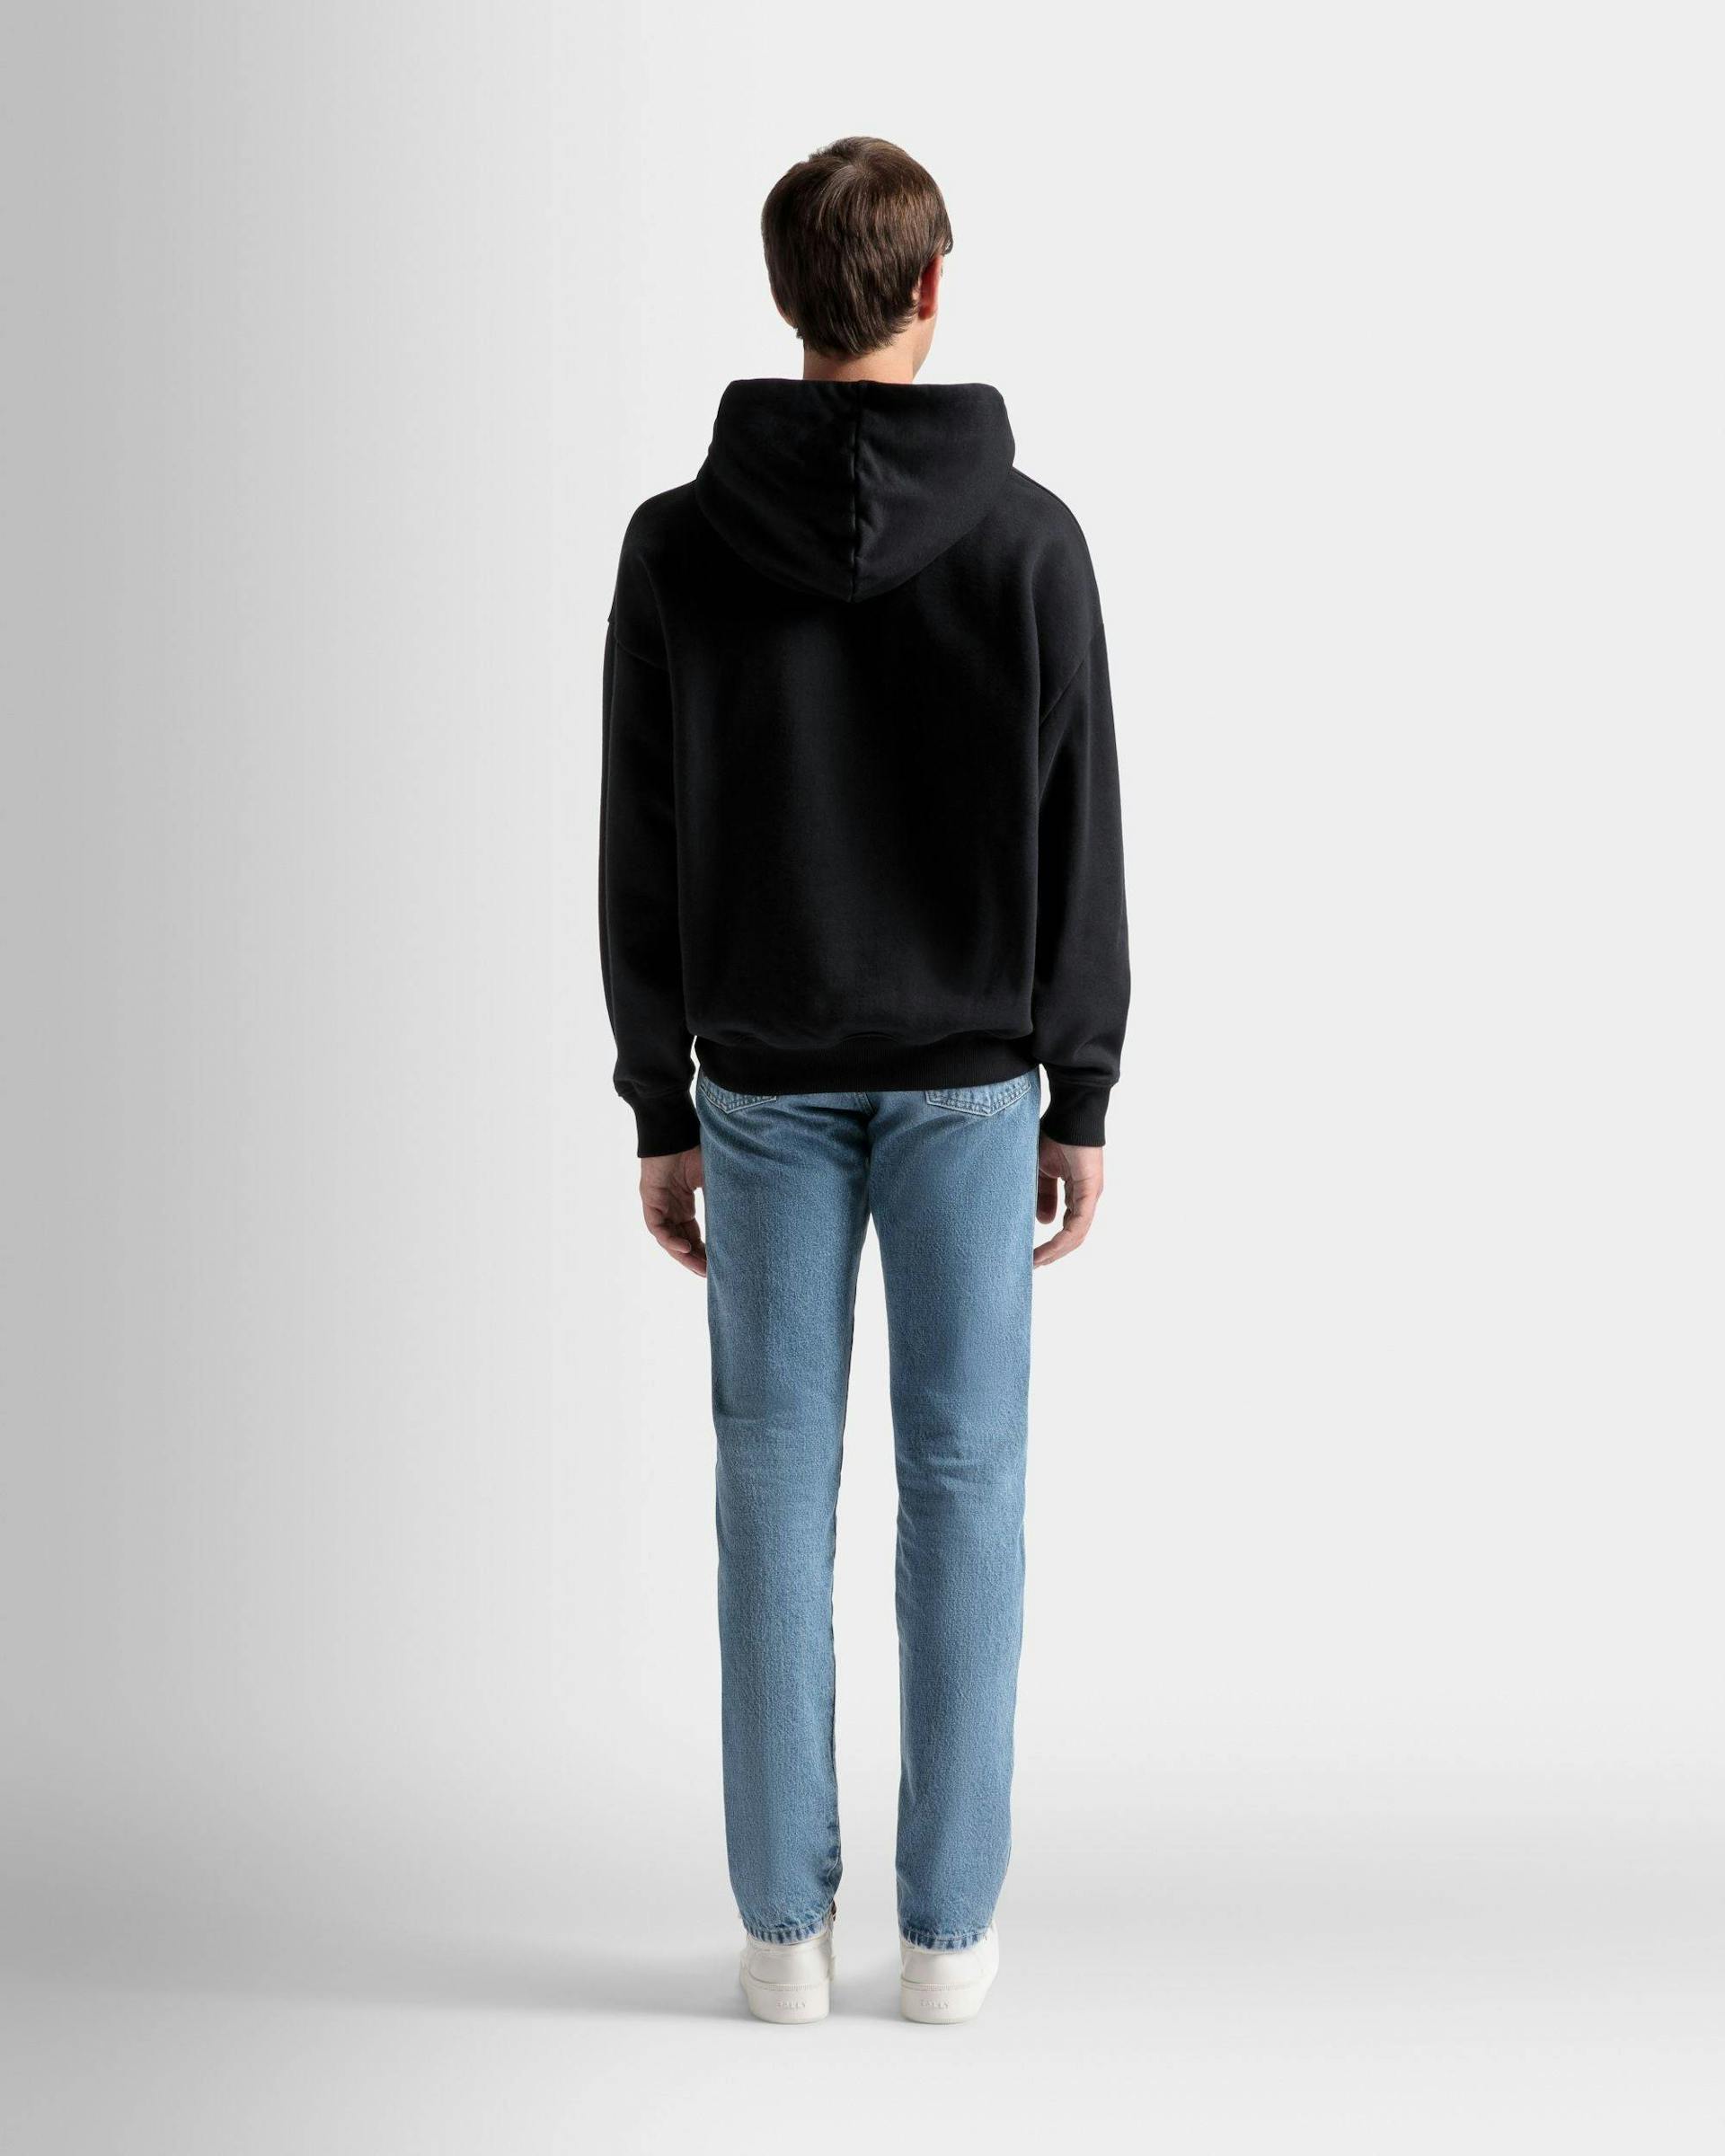 Men's Logo Hooded Sweatshirt In Black Cotton | Bally | On Model Back